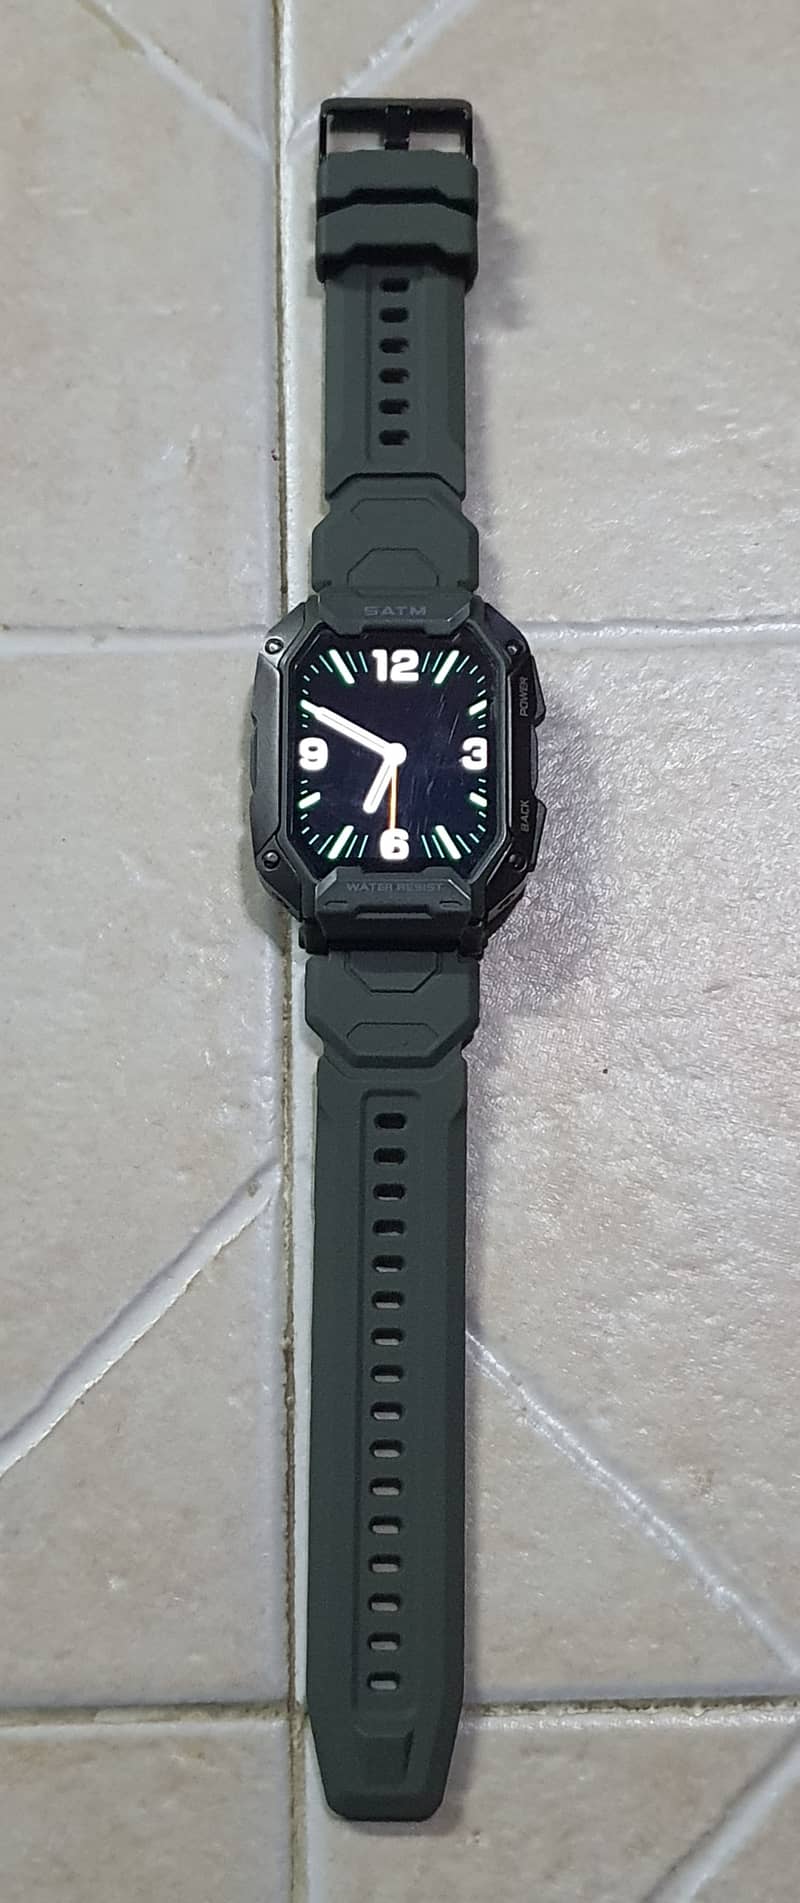 Kospet Smart rugged watch c20. 1